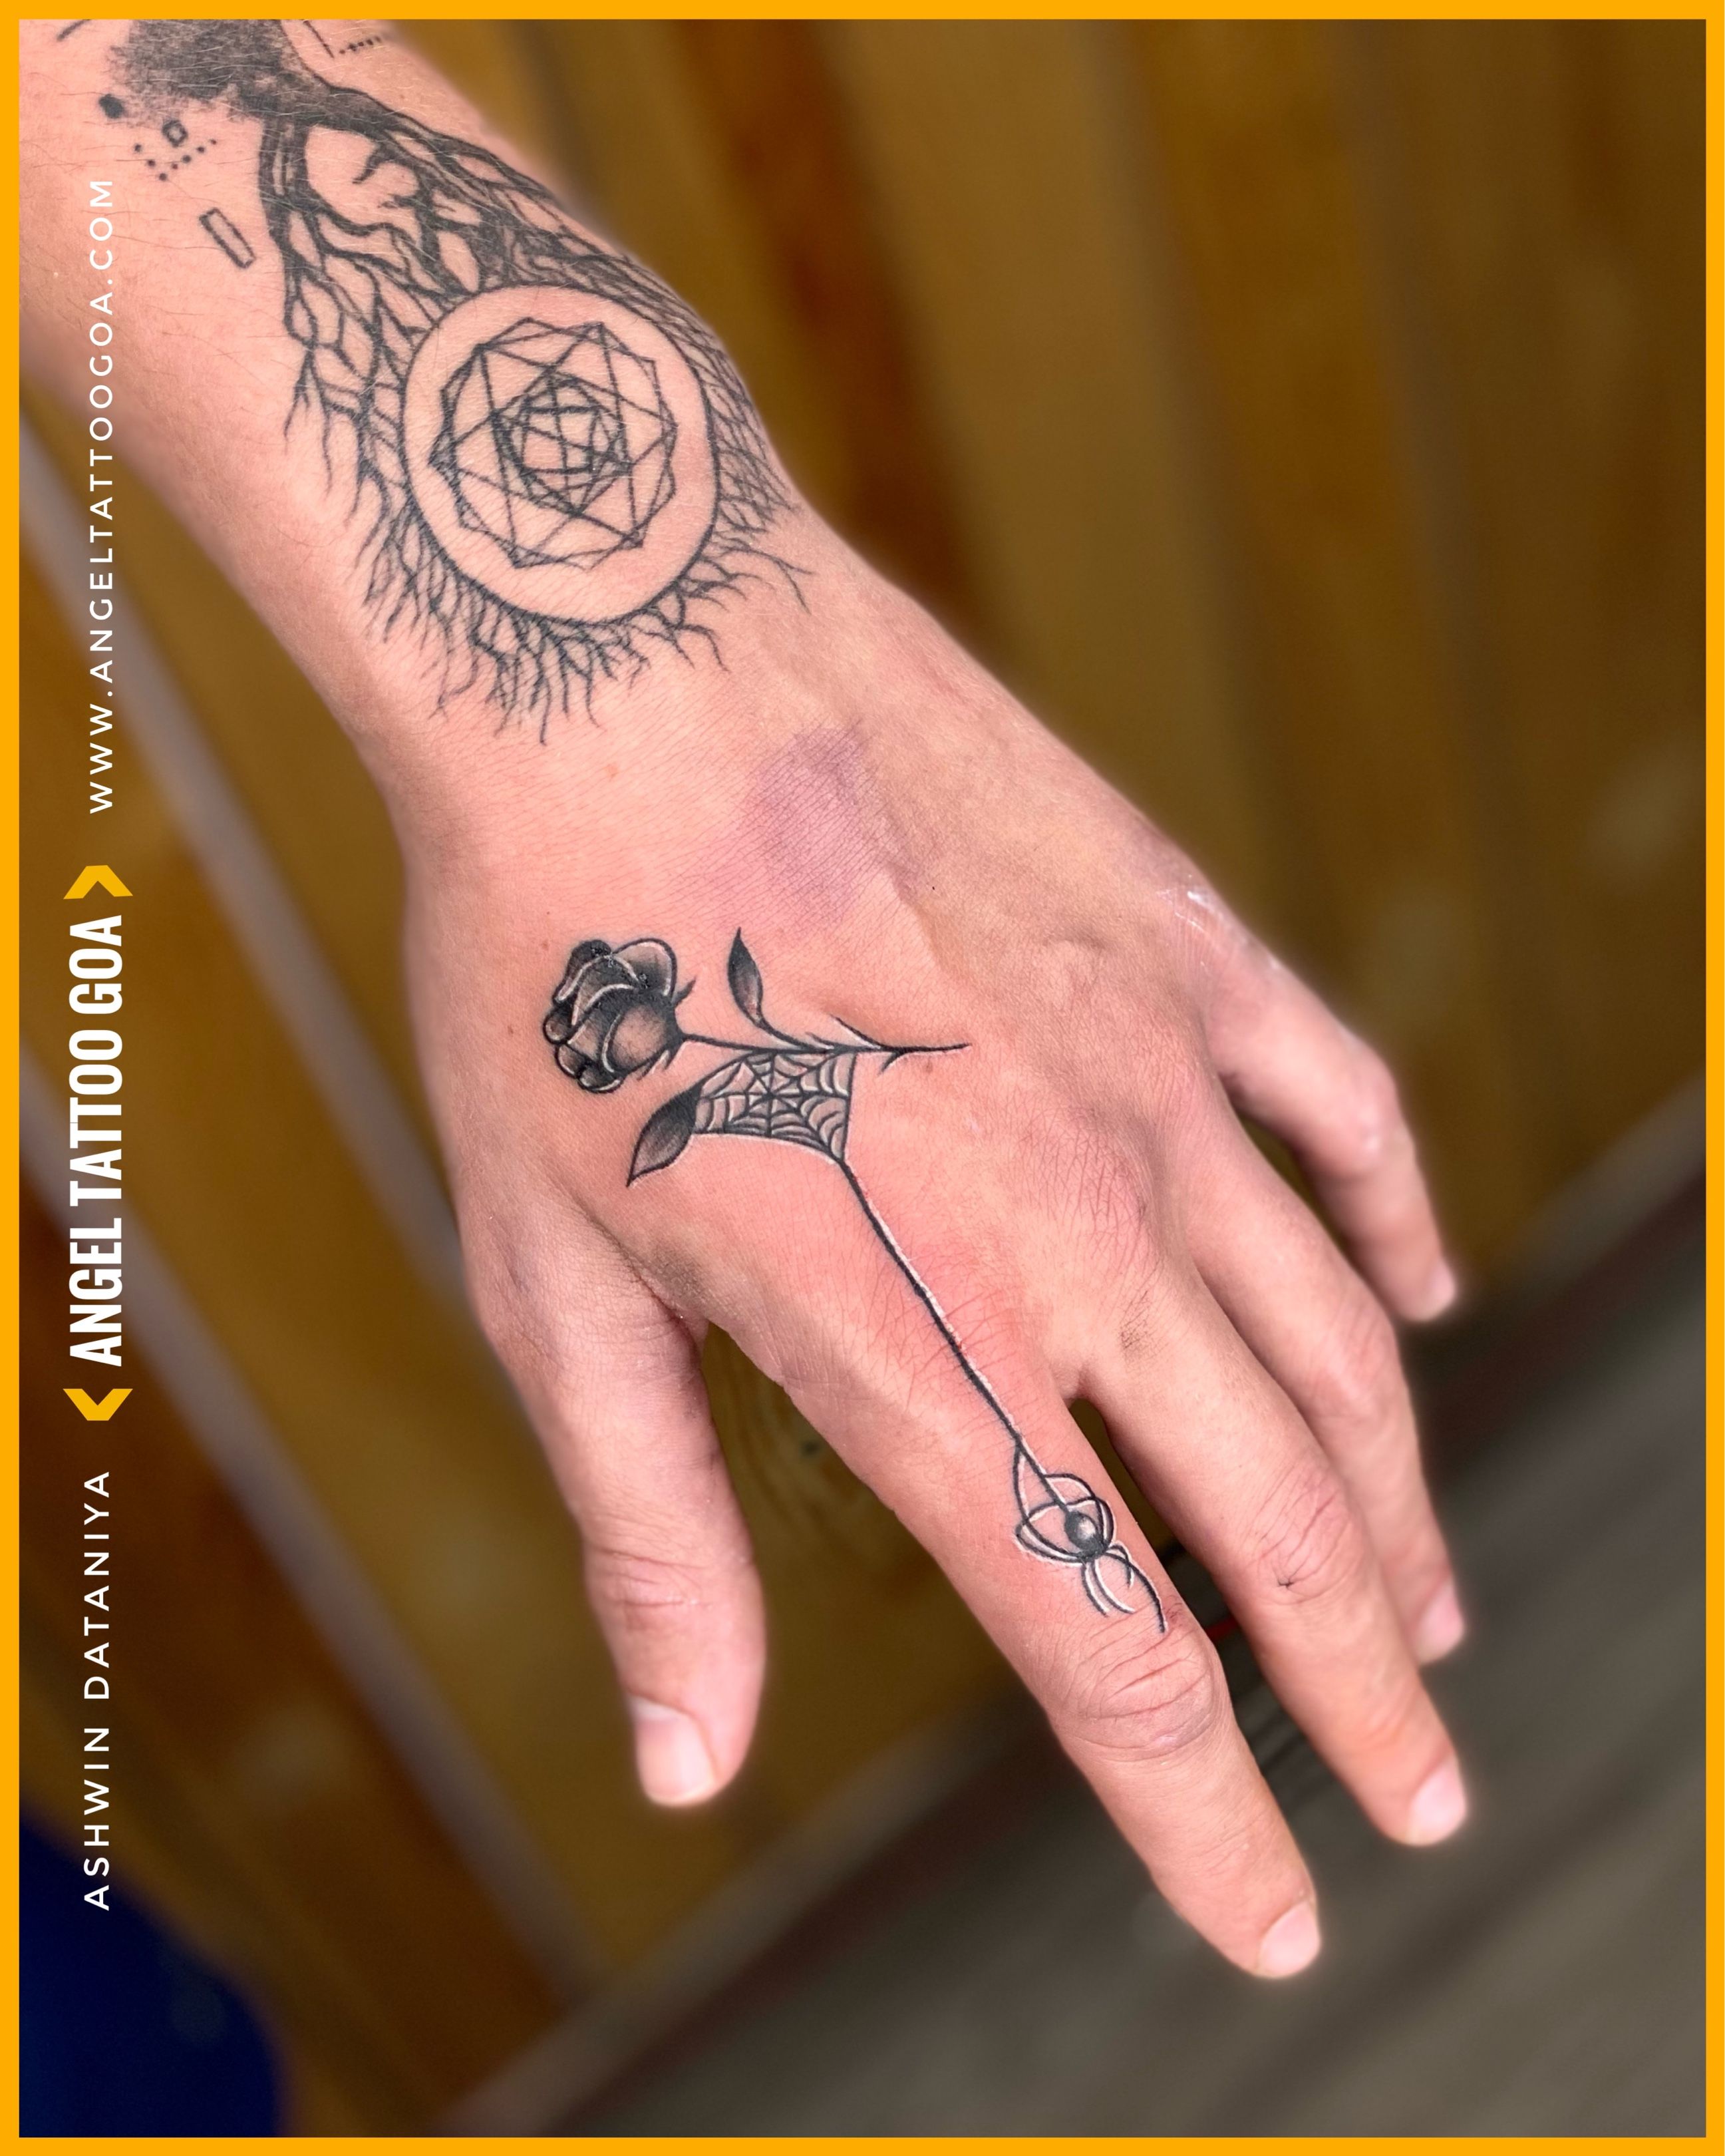 పవన్ కల్యాణ్ చేతిపై టాటూ.. దాని వెనుక సీక్రెట్ ఏమిటంటే.. పవర్‌స్టార్  ఇమేజ్‌కు భిన్నంగా! | Is Pawan Kalyan' tattoo on hand for Krish's Hari Hara  Veera Mallu? - Telugu Filmibeat